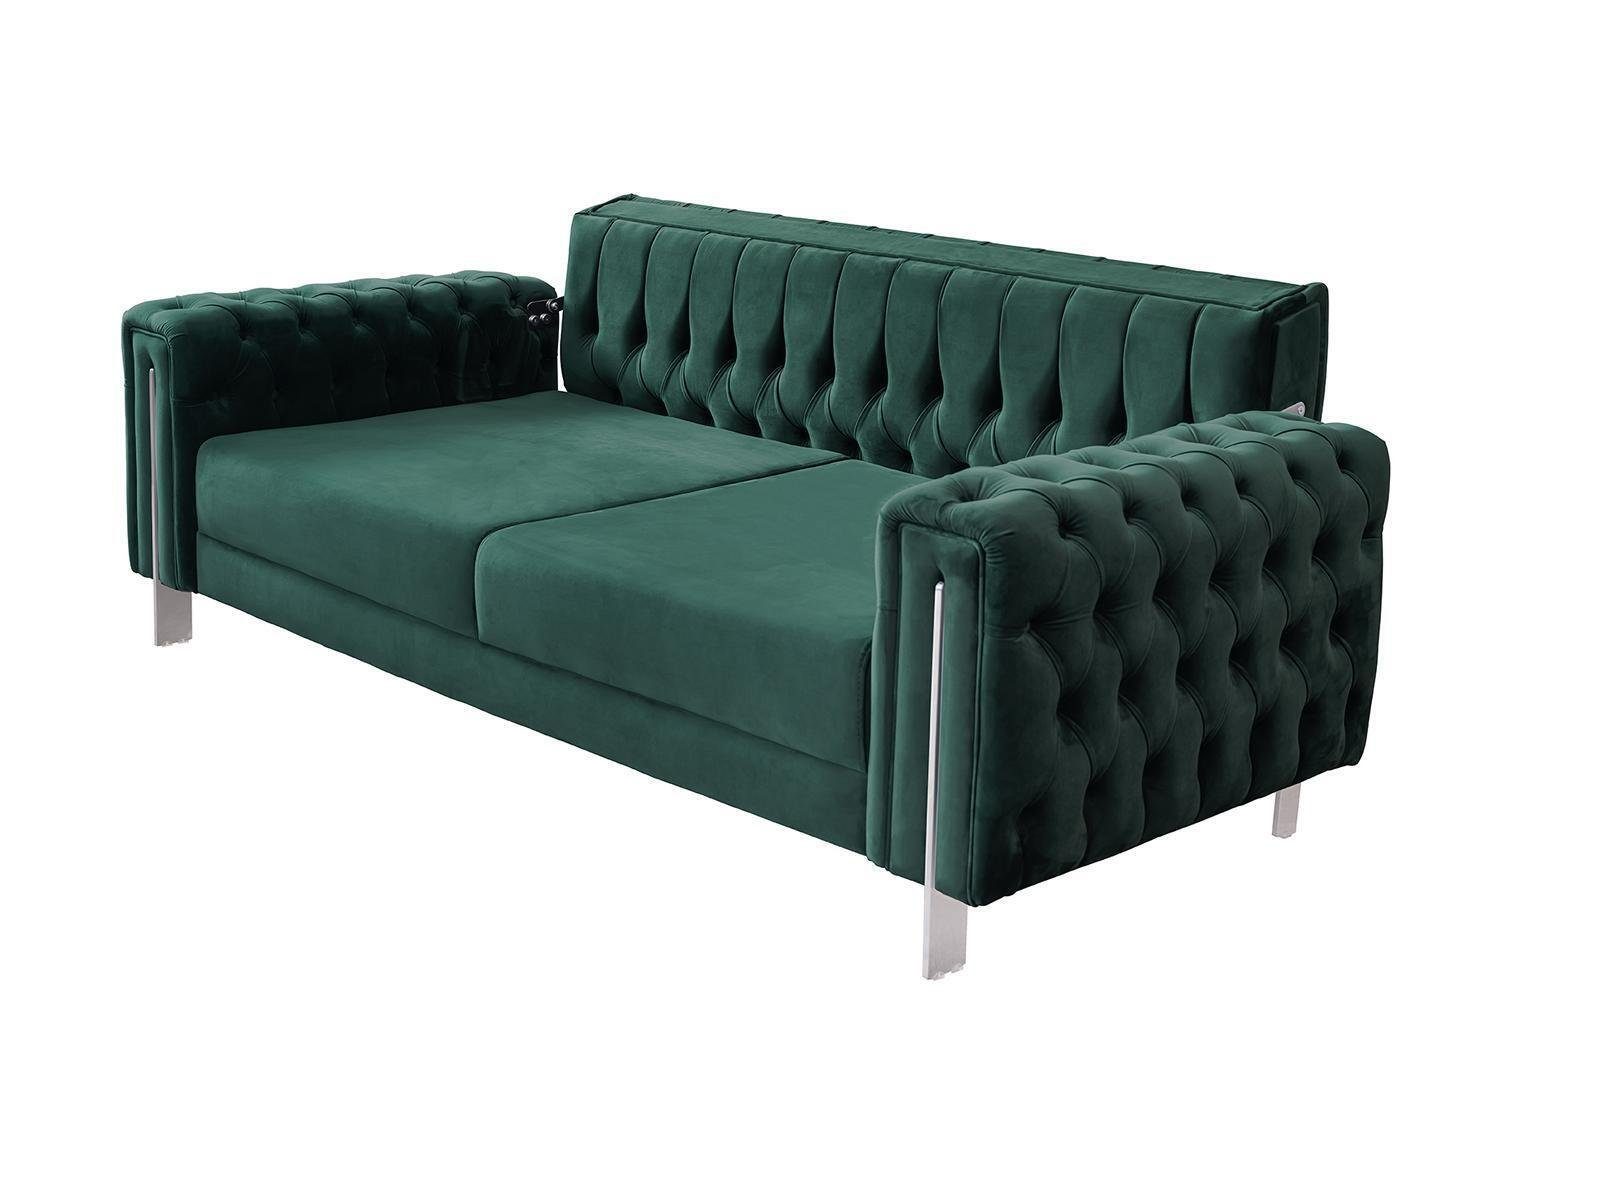 Grüne Chesterfield-Sofa, Luxus 230cm Sofa Einrichtung Wohnzimmer Couch Möbel Chesterfield JVmoebel